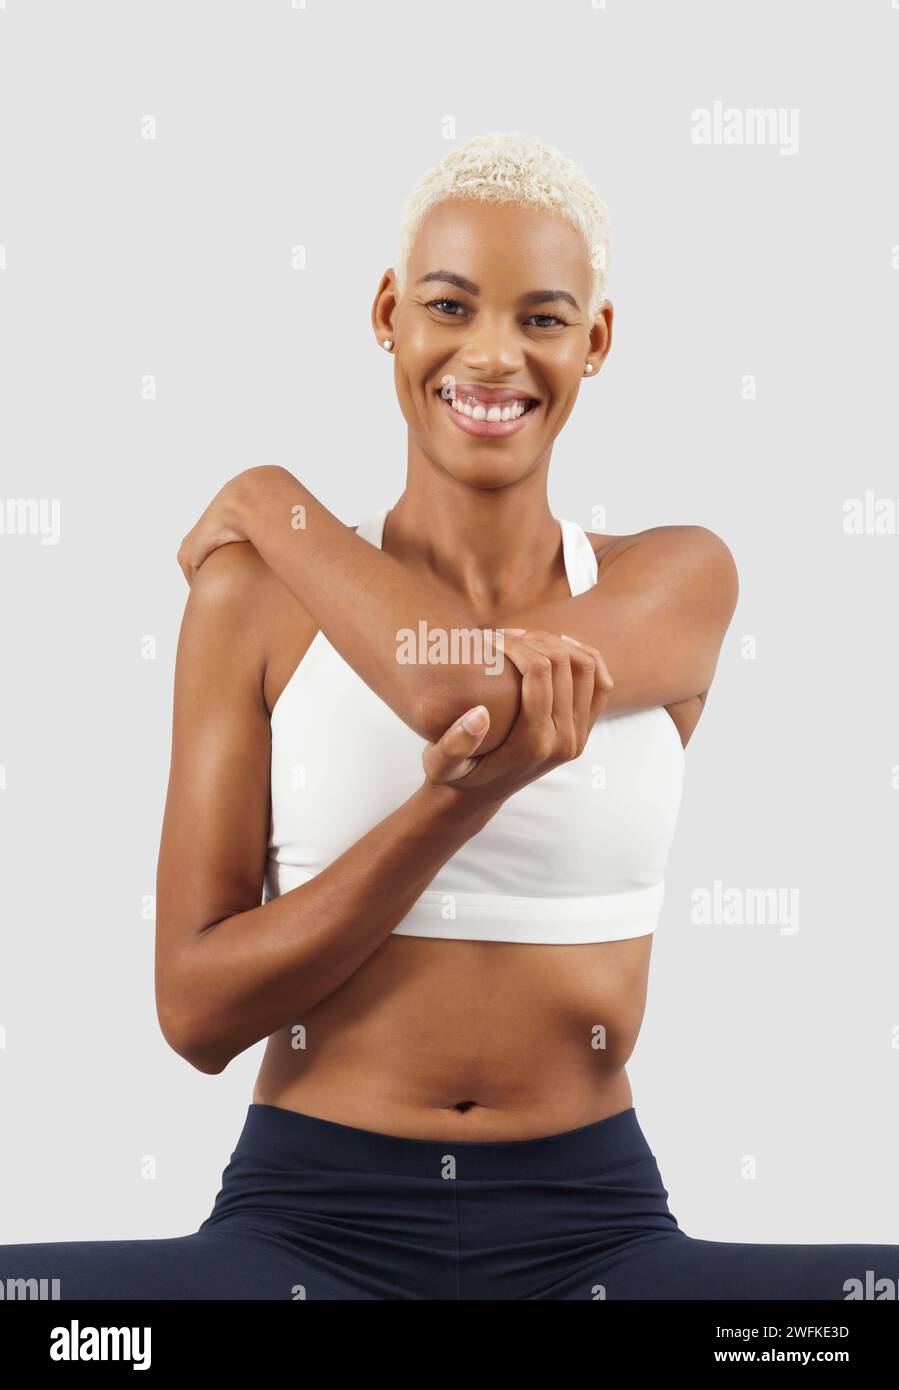 Entraînement de fitness, femme souriante étirant les bras, athlète féminine africaine latino-américaine en vêtements de sport, Sportswoman font de l'exercice physique d'entraînement dans la salle de gym Banque D'Images